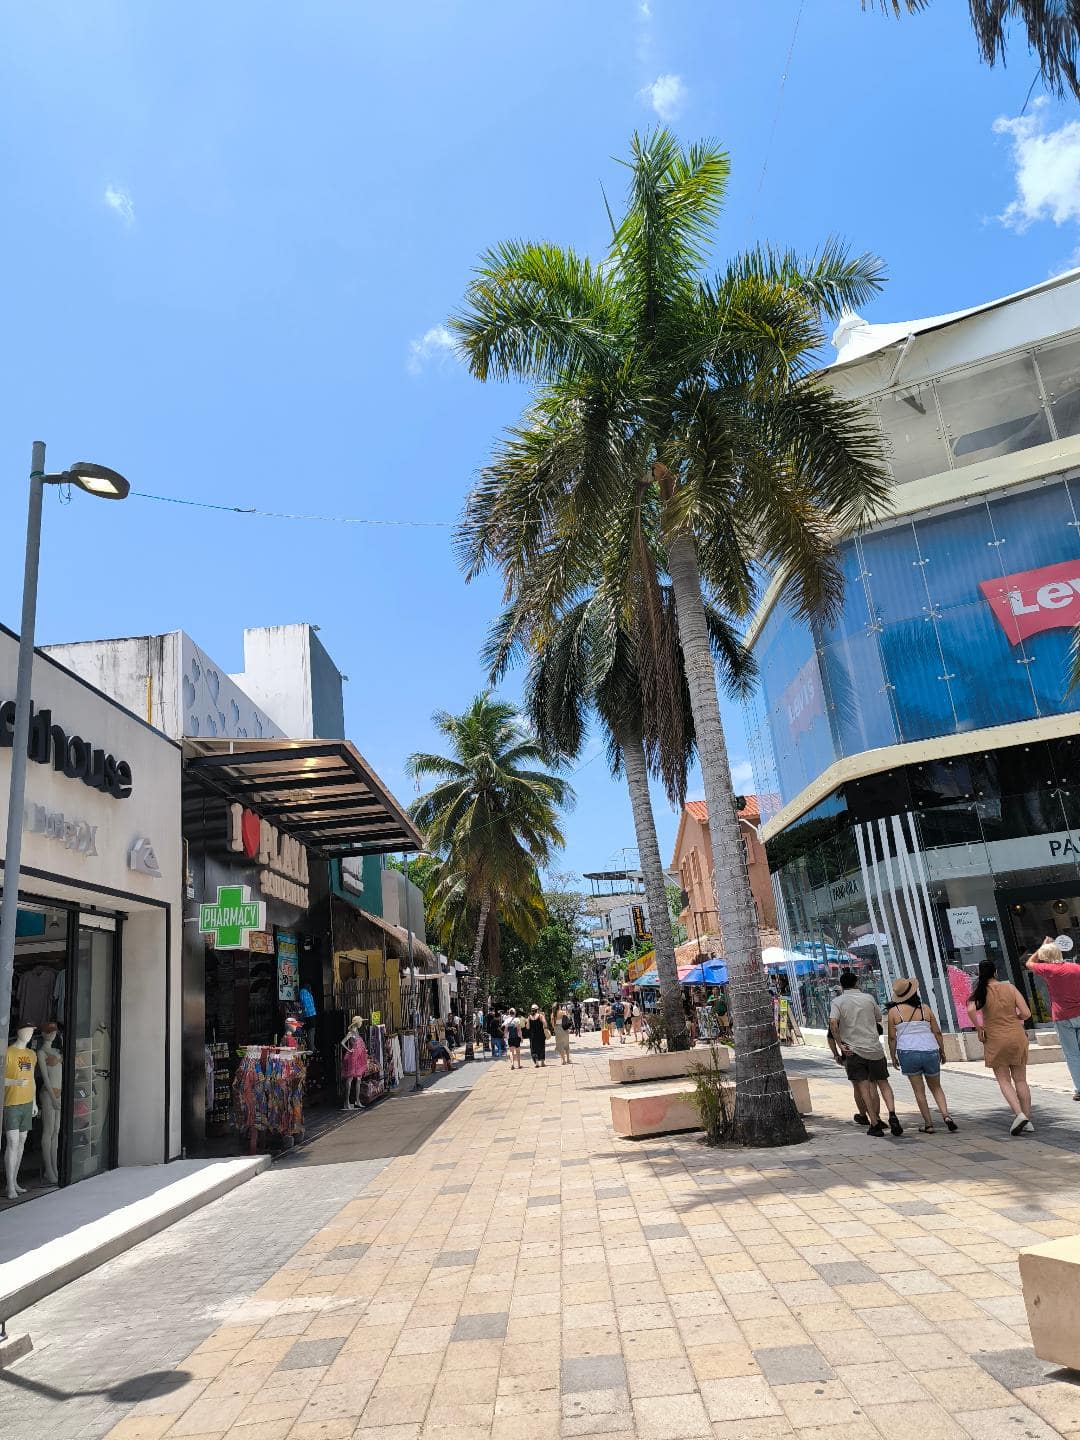 Ulica plná obchodov, reštaurácií a s palmou.